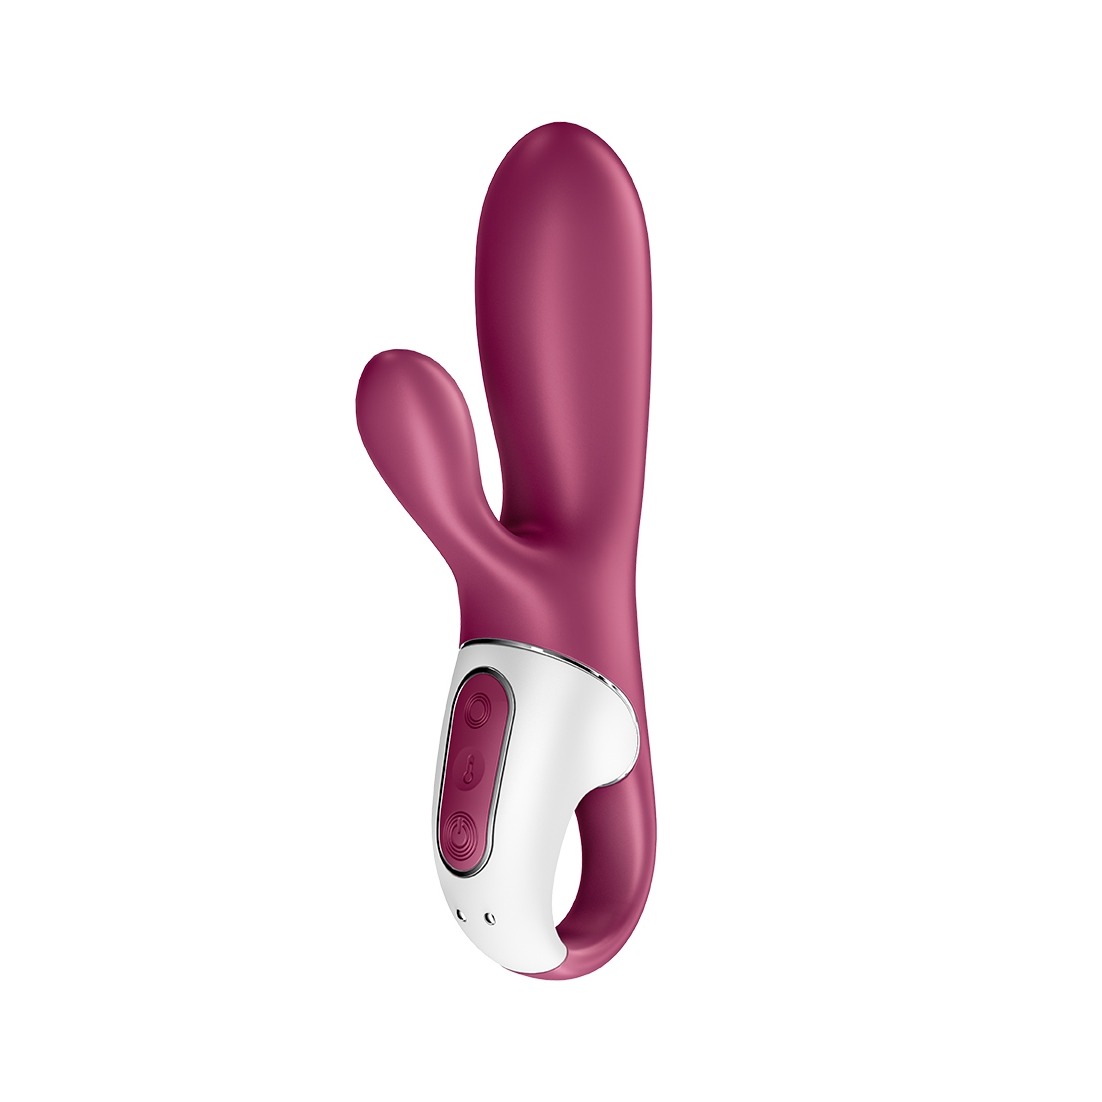 Hot Bunny - Heated Rabbit Vibrator